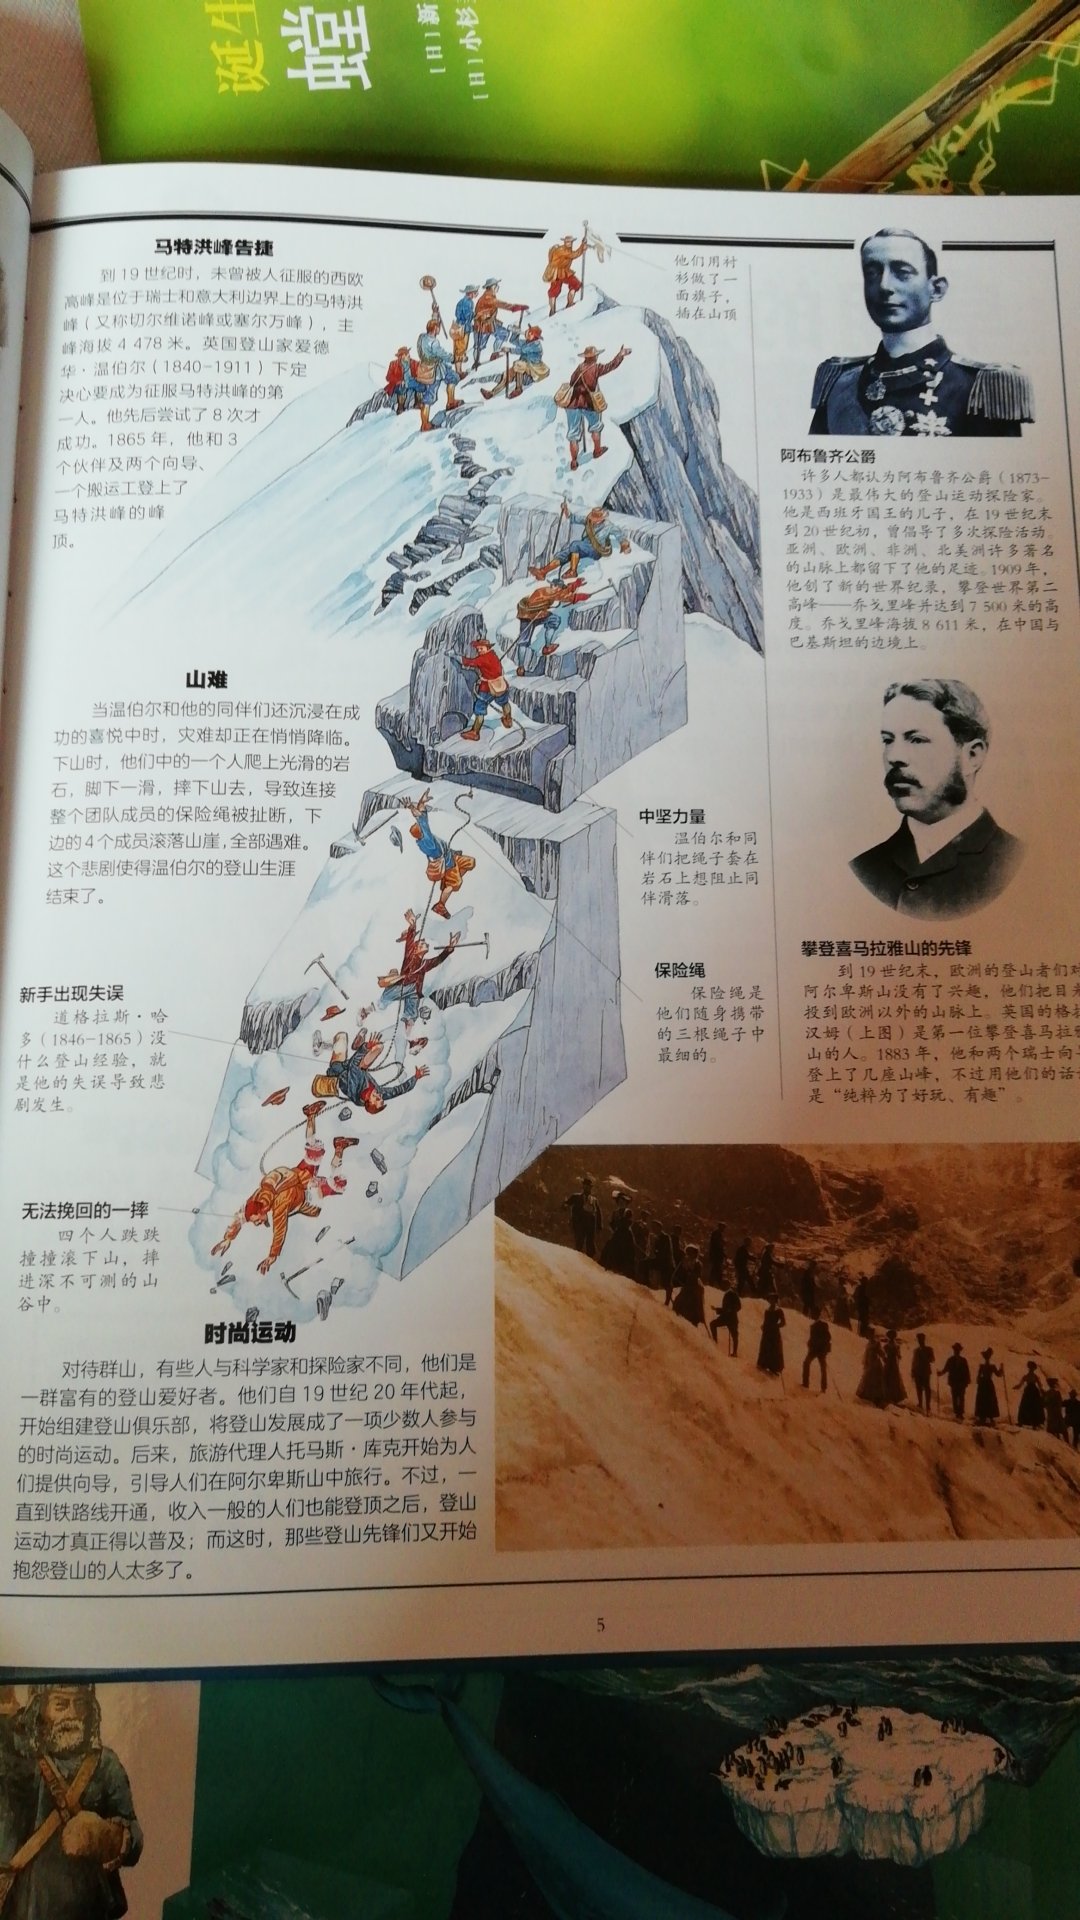 人类攀登珠穆朗玛峰纪实，带你了解探险家们征服世界最高峰的艰苦历程，了解自然地理